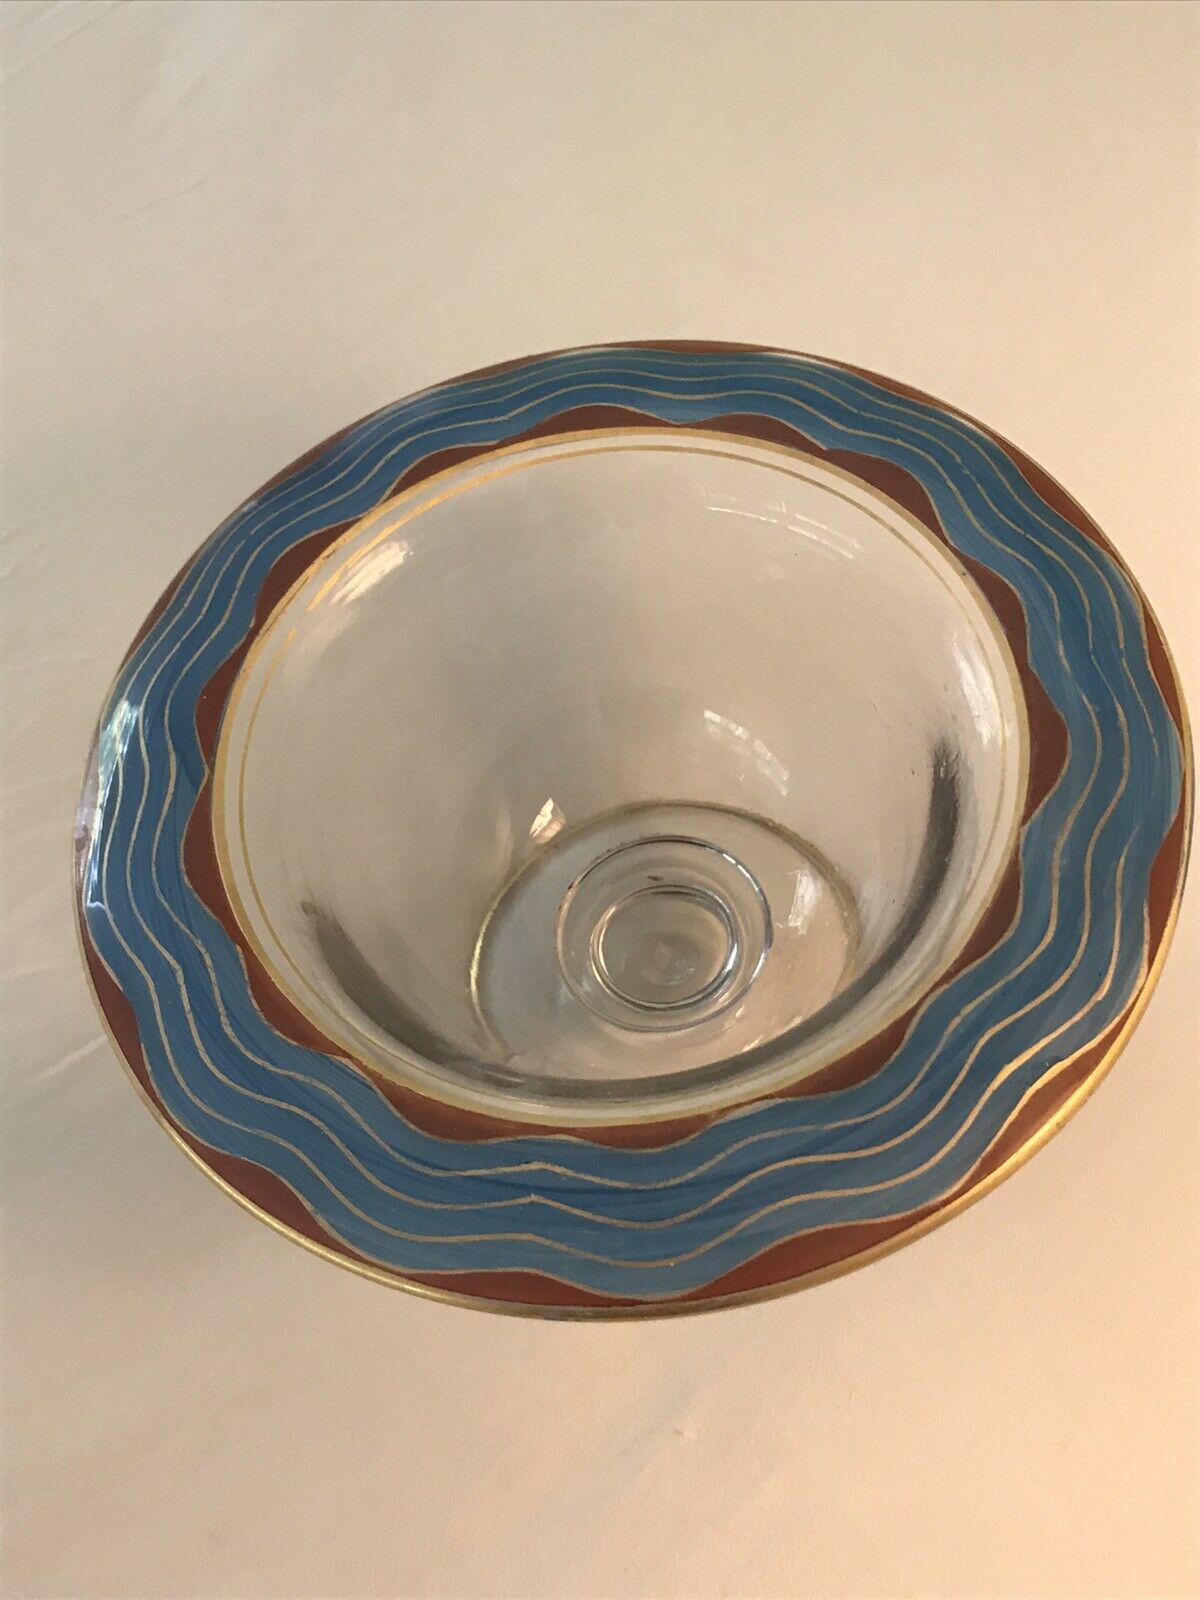 Antique Art Deco Handpainted Glass Bowl